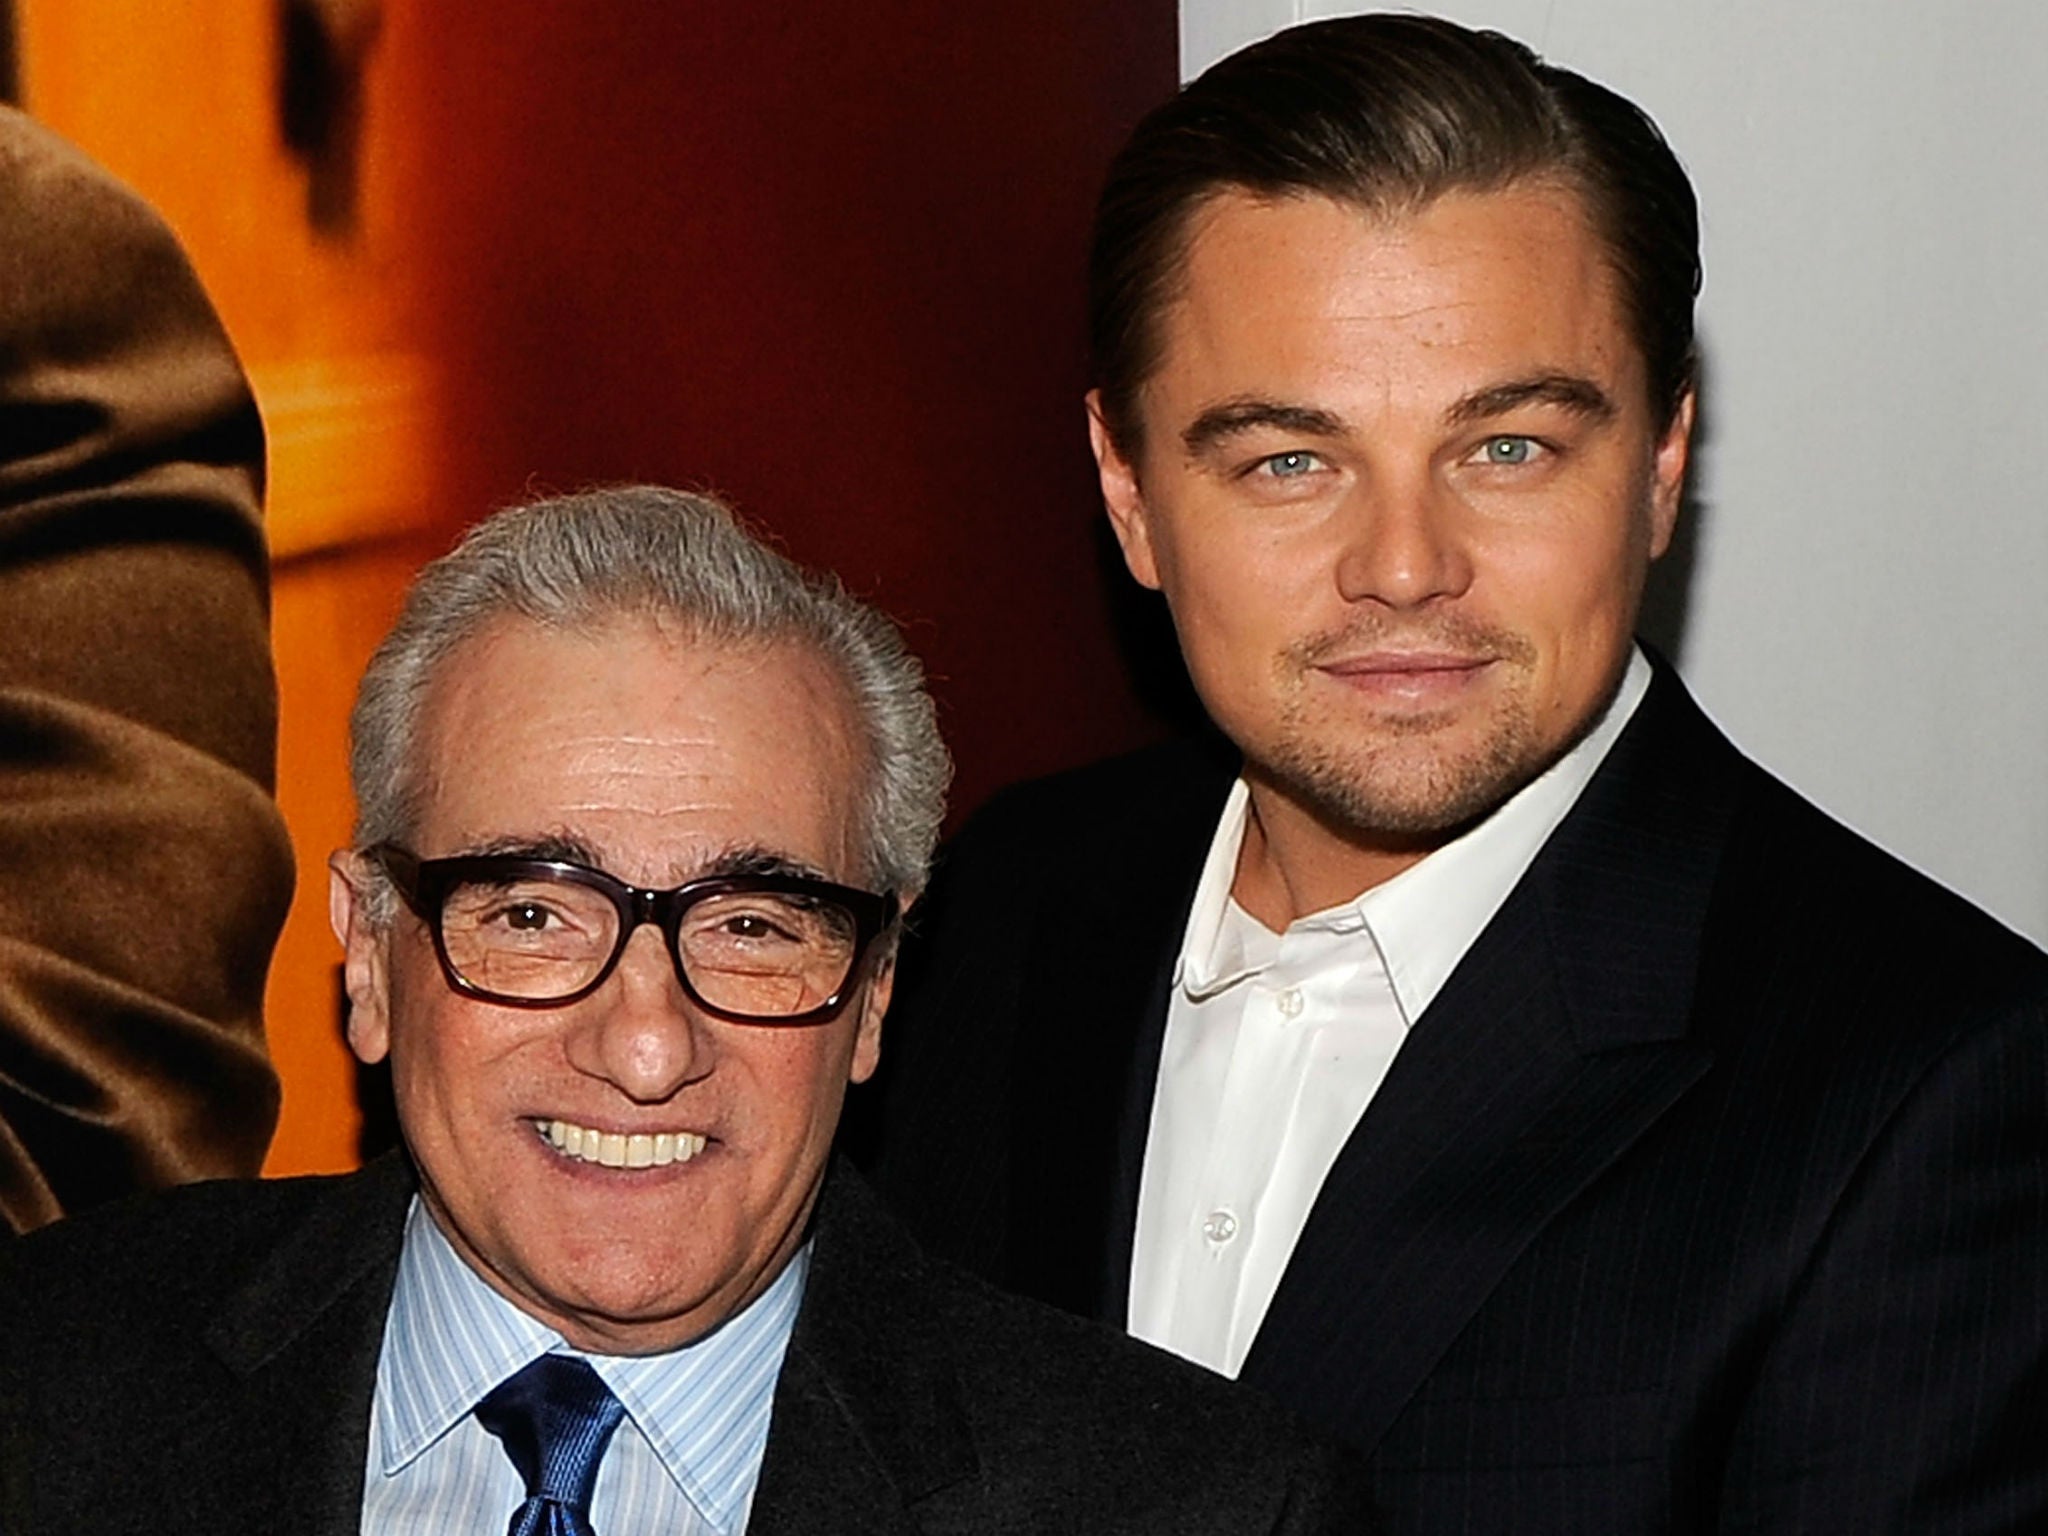 Leonardo DiCaprio is Martin Scorsese's favourite lead of late